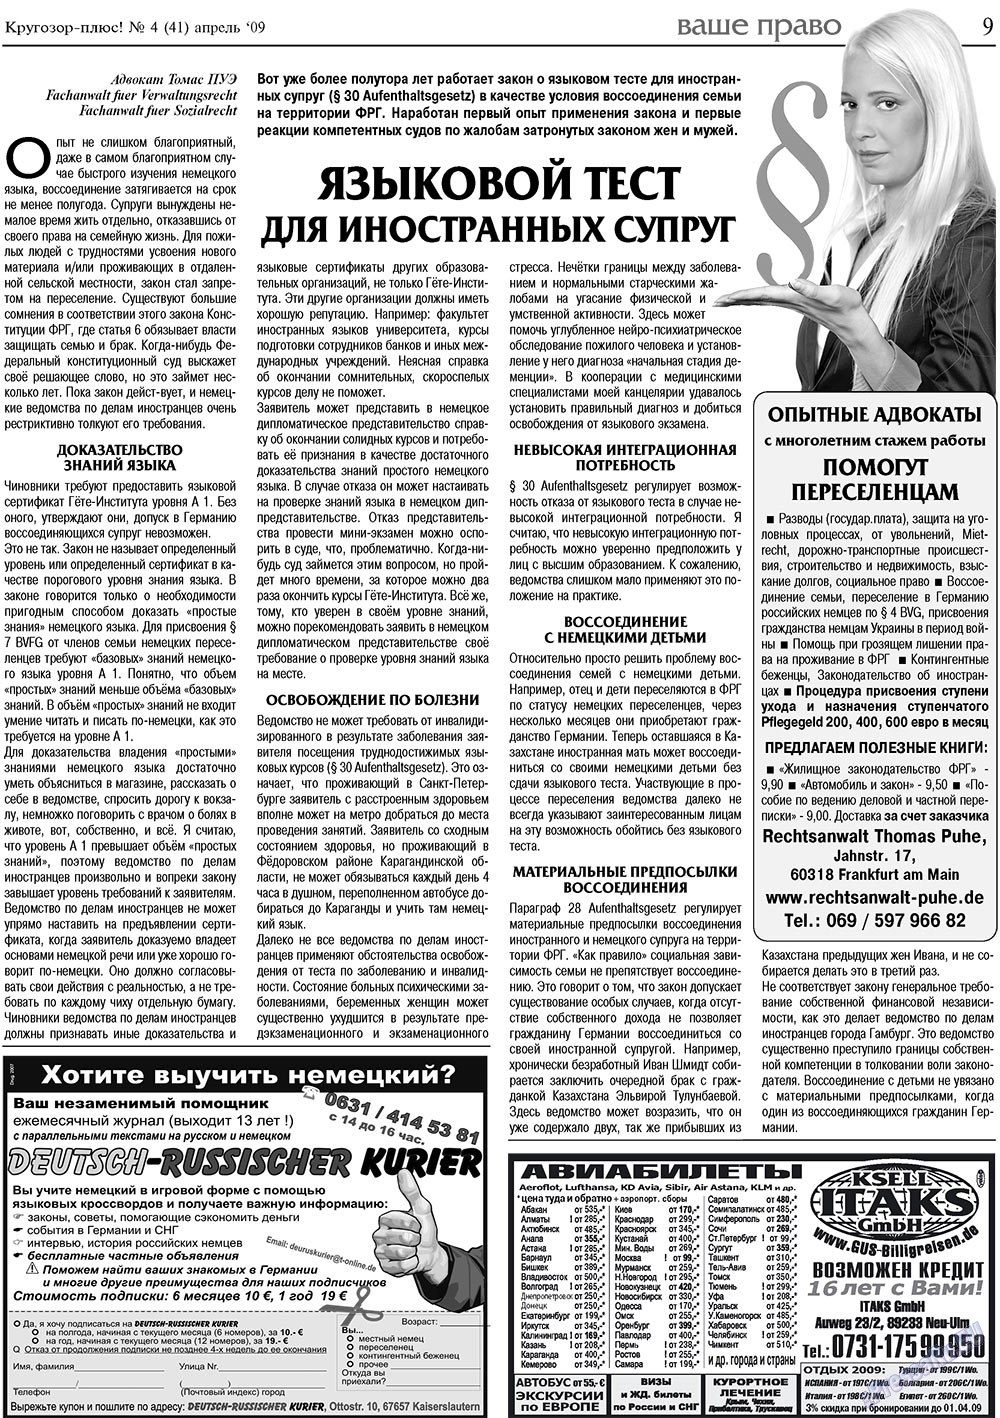 Кругозор плюс!, газета. 2009 №4 стр.9